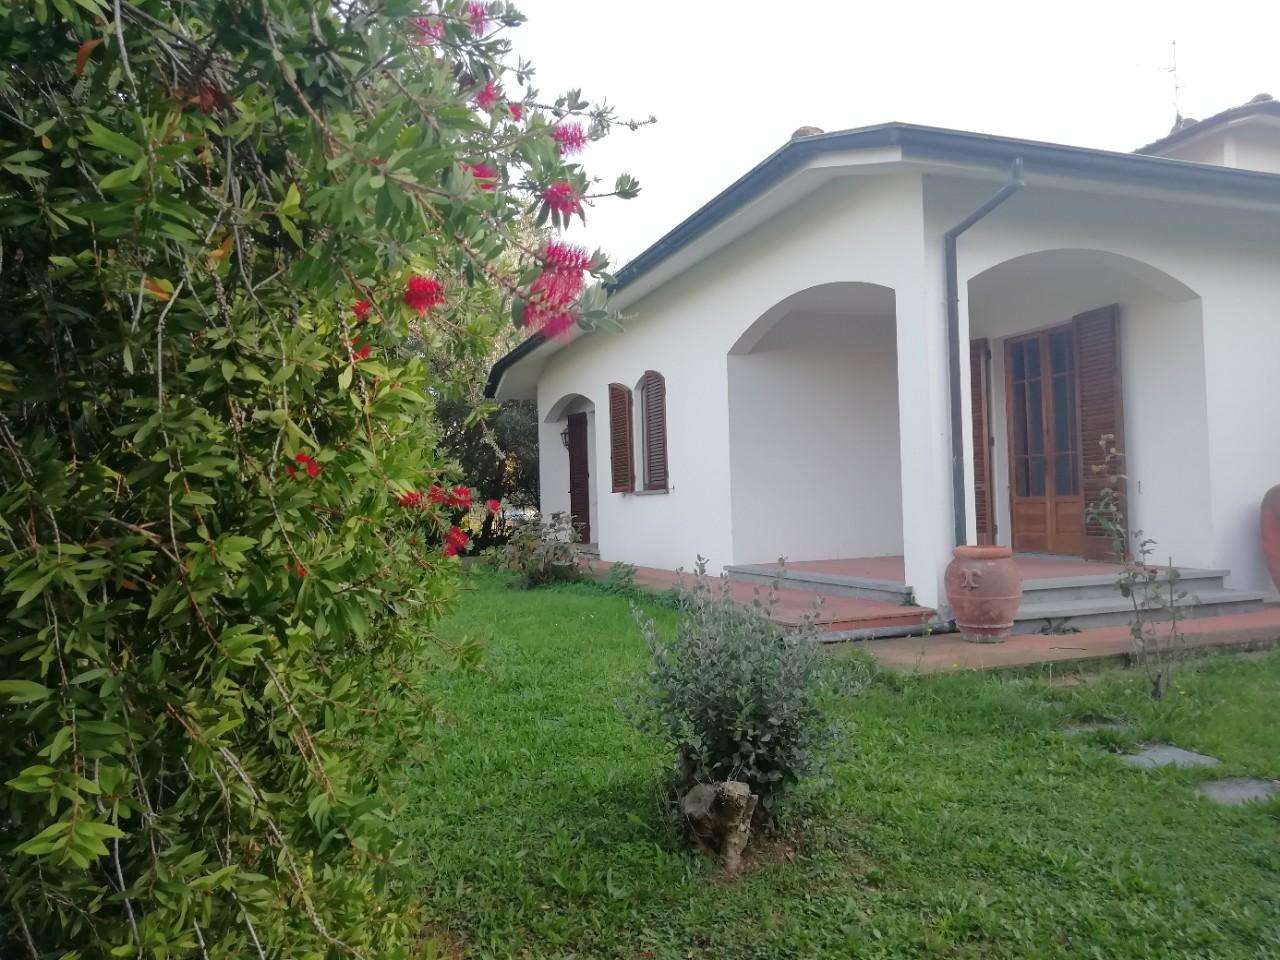 Villa in Vendita a Cascina Via Tosco Romagnola,